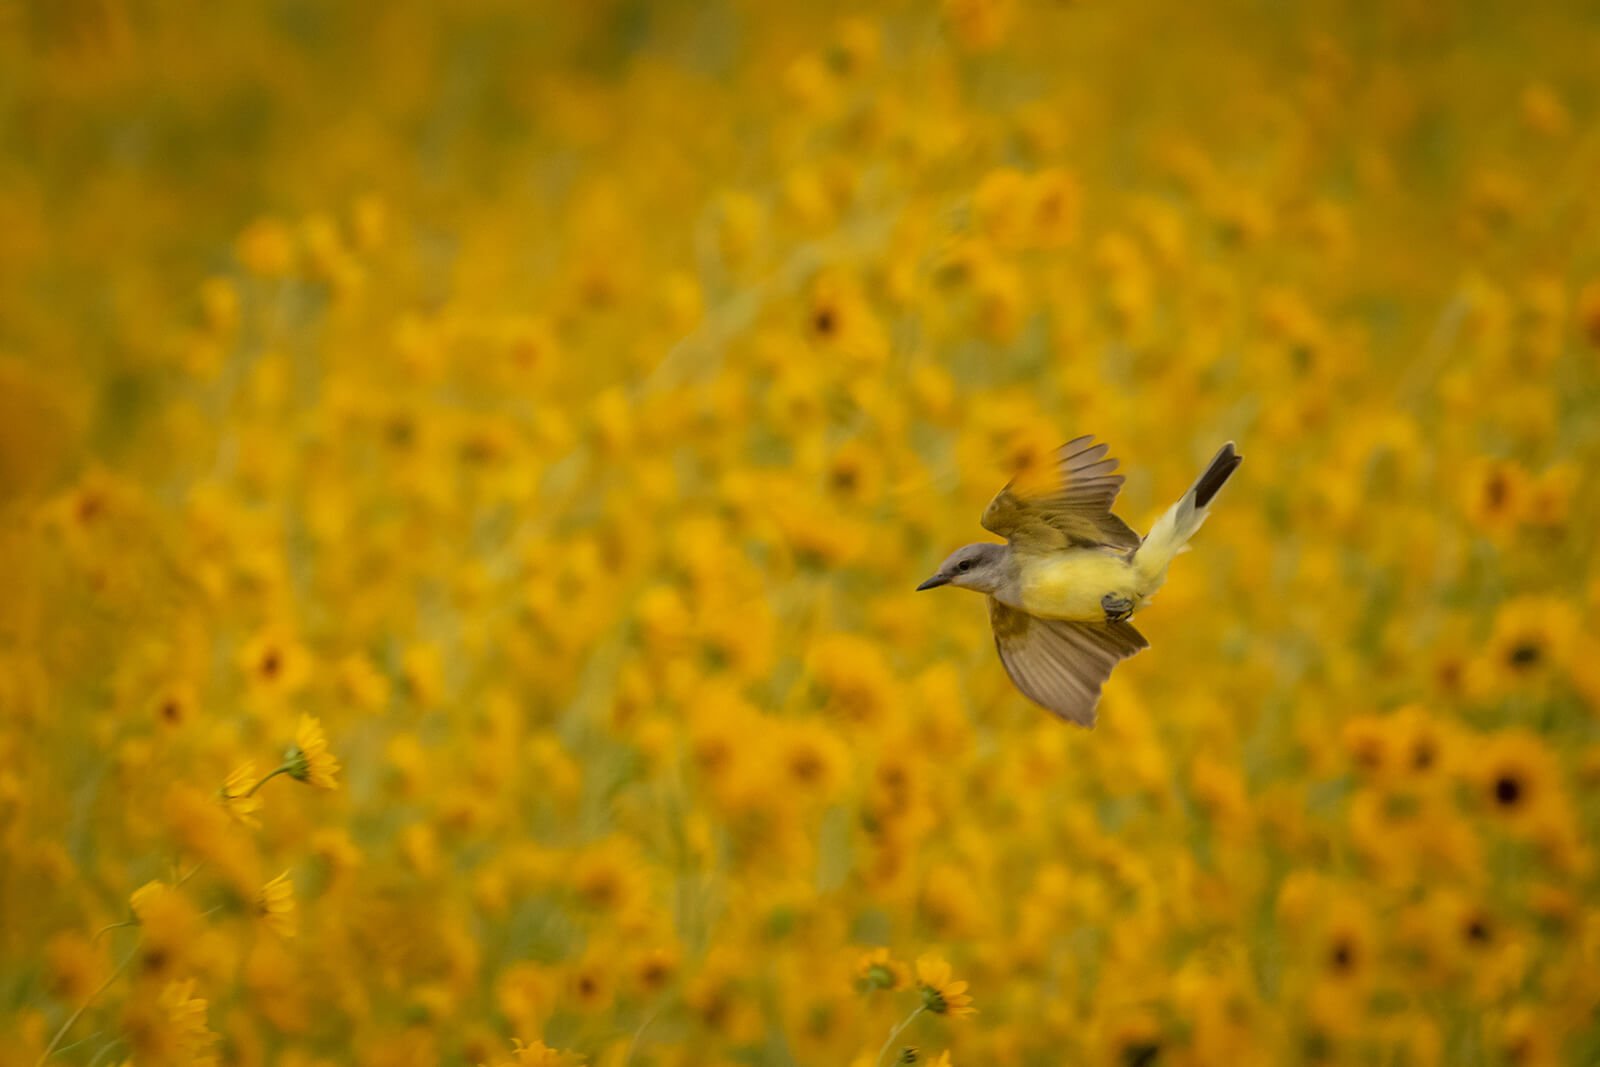 Western kingbird in a field of Pecos sunflowers